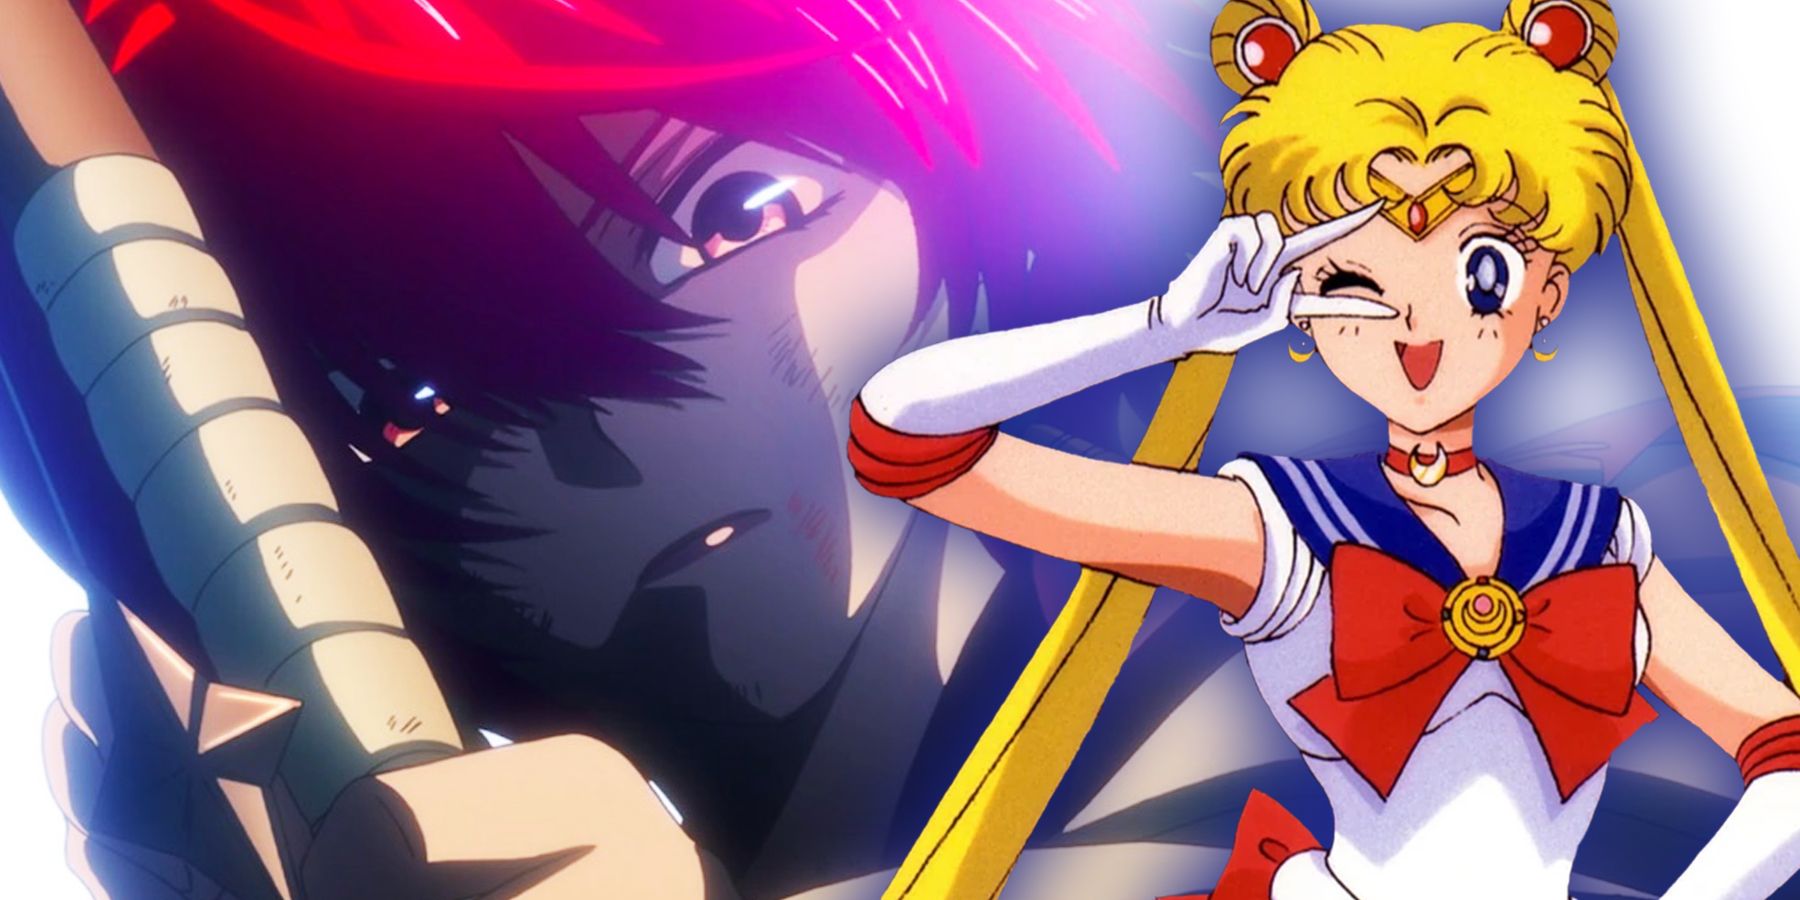 Yona of anime Yona of the Dawn and Sailor Moon of anime Sailor Moon